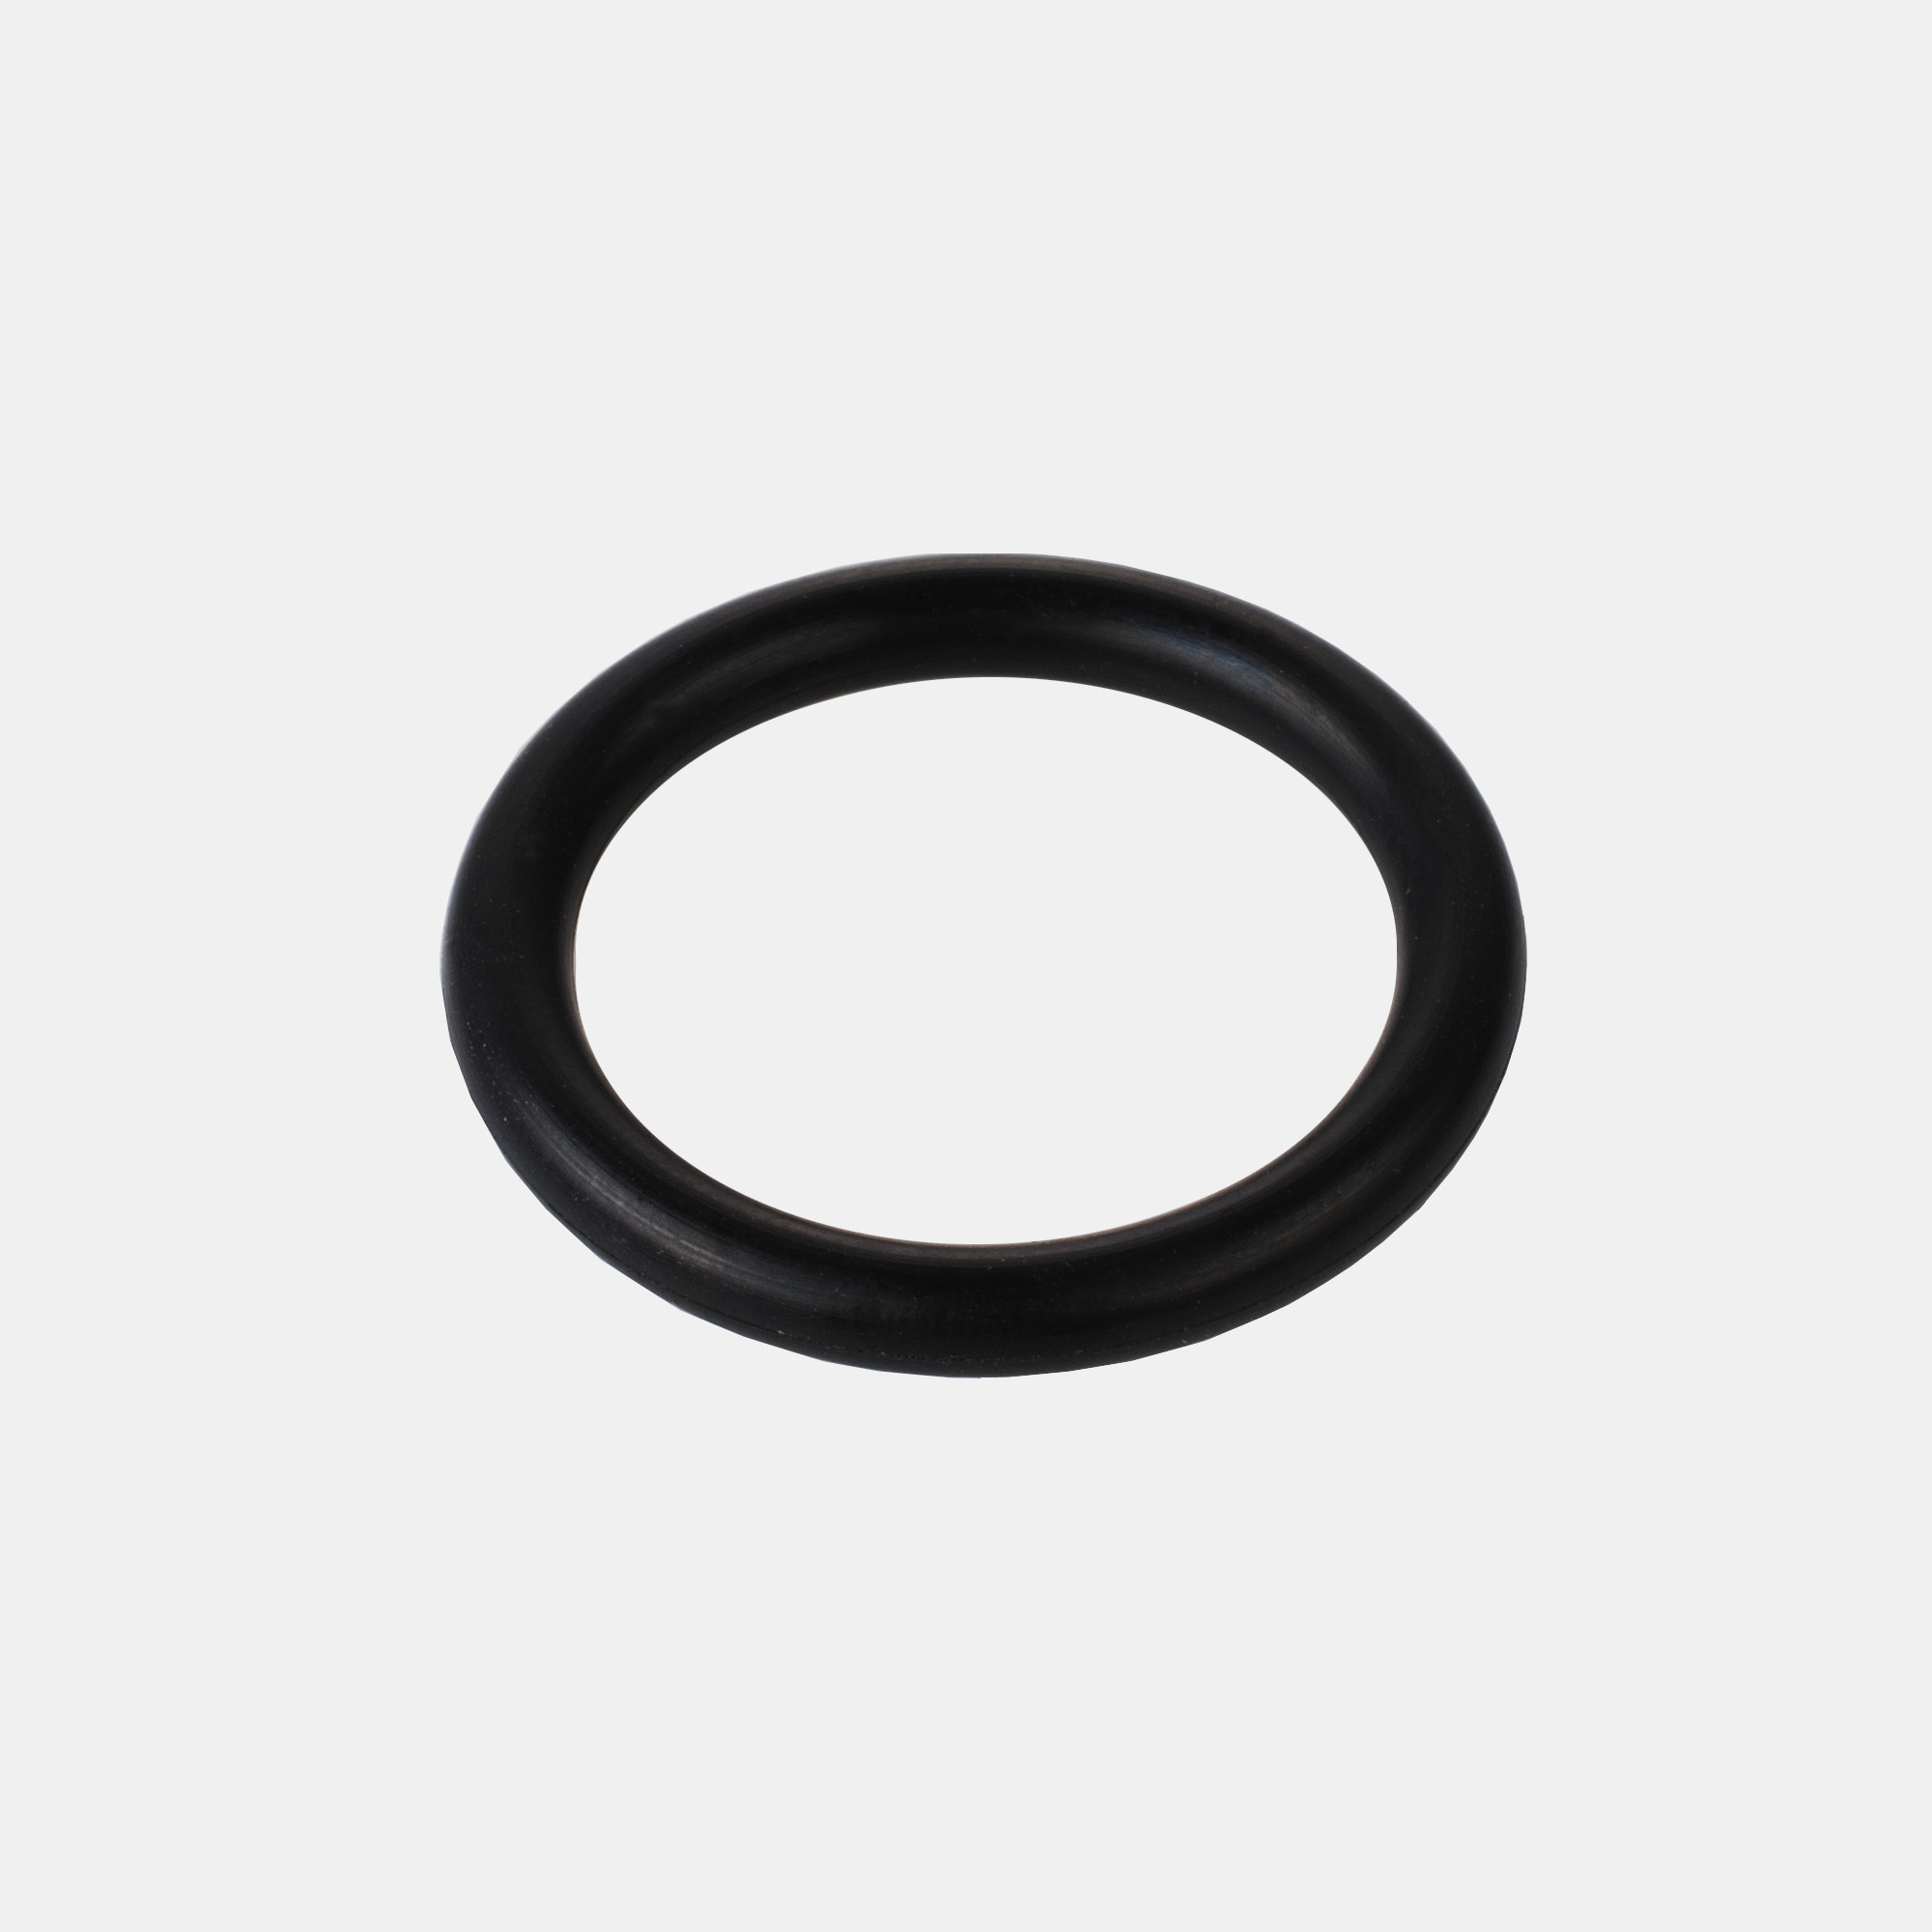 Уплотнительное кольцо воздушного фильтра. Уплотнительное кольцо штуцера m113407010. Уплотнительное кольцо для фитинга шланга мойки Daewoo DAW 450. Уплотнительное кольцо Simonelli Appia 2. Nuova Simonelli Appia уплотнительное кольцо.